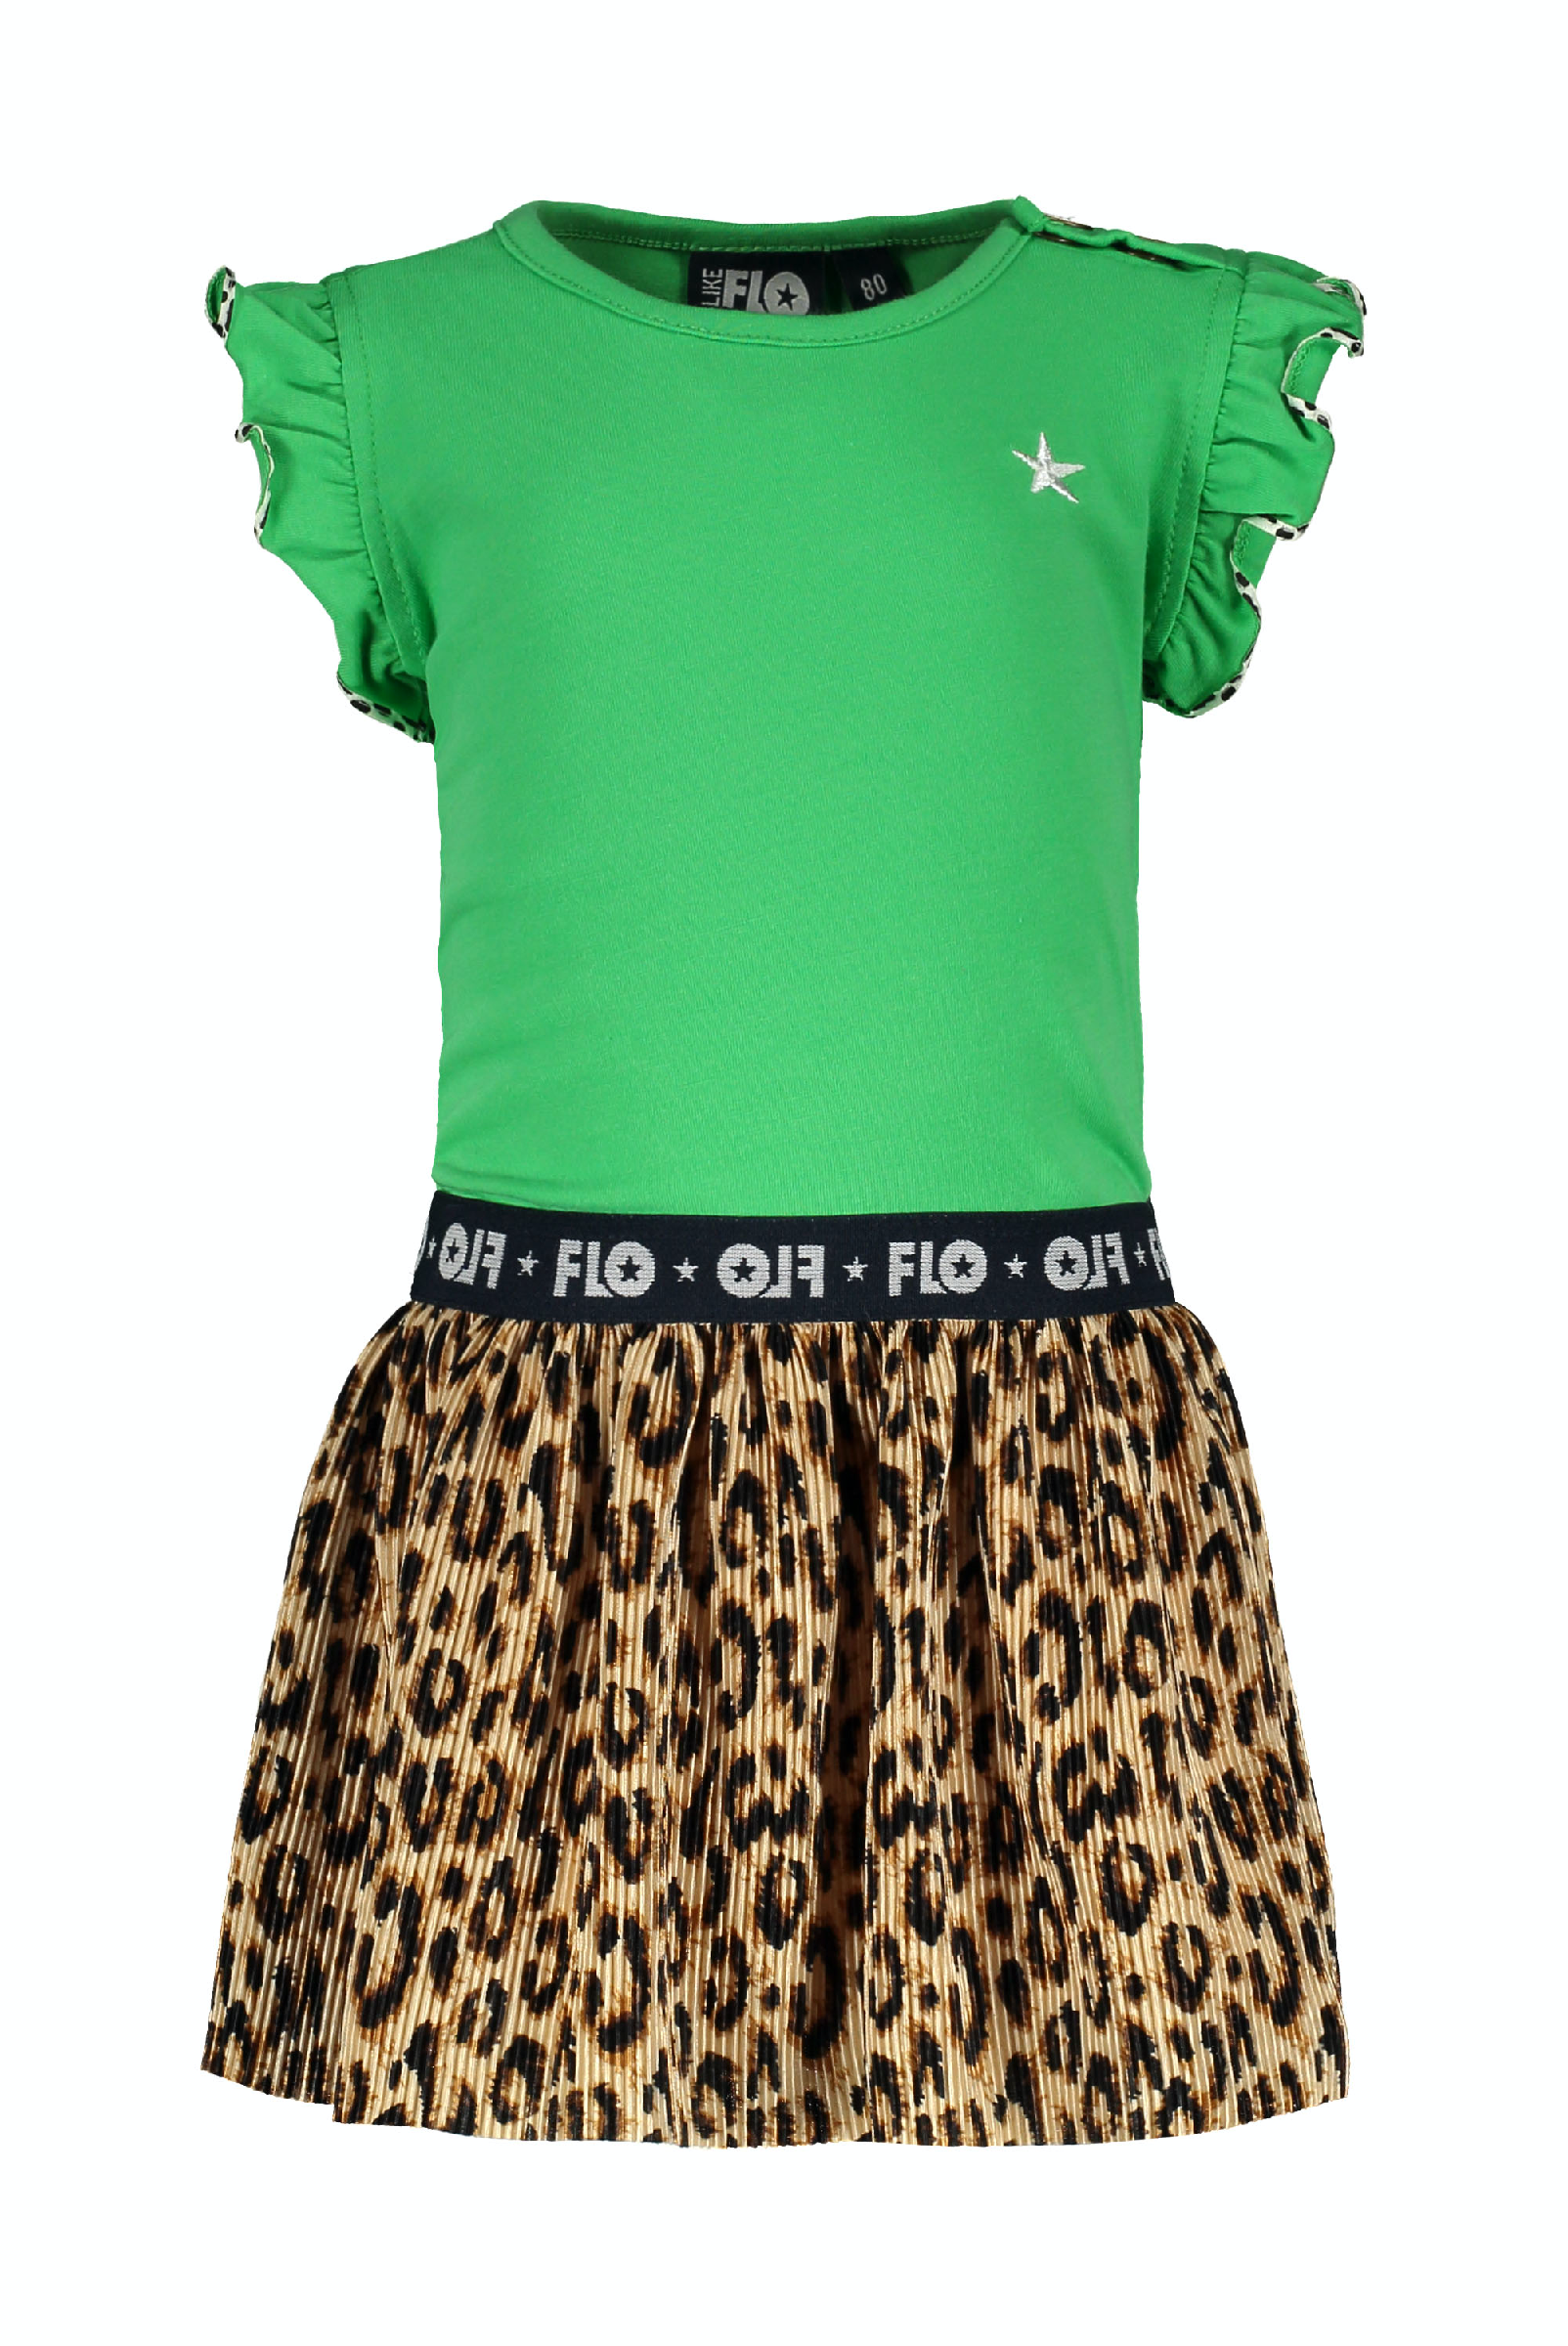 Meisjes Flo baby girls ruffle jersey dress with panter plisse skirt van Flo in de kleur Green in maat 92.